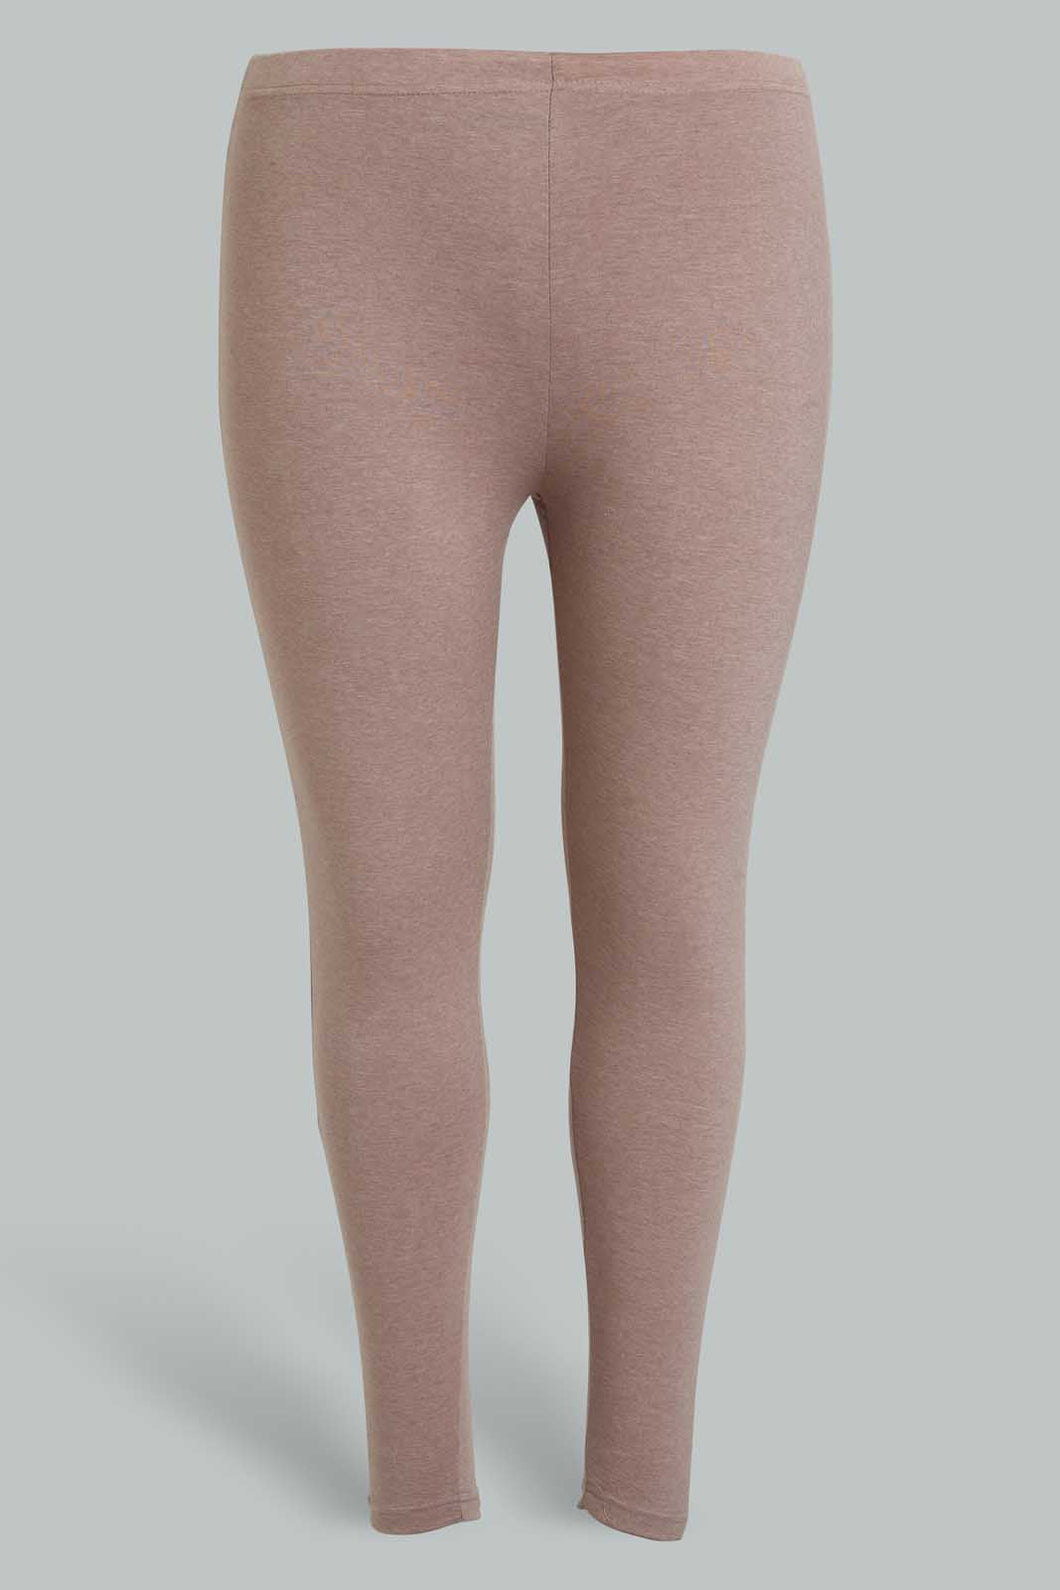 Blush Basic Legging For Plus Size Women ليجينجز باللون الوردي الفاتح للنساء